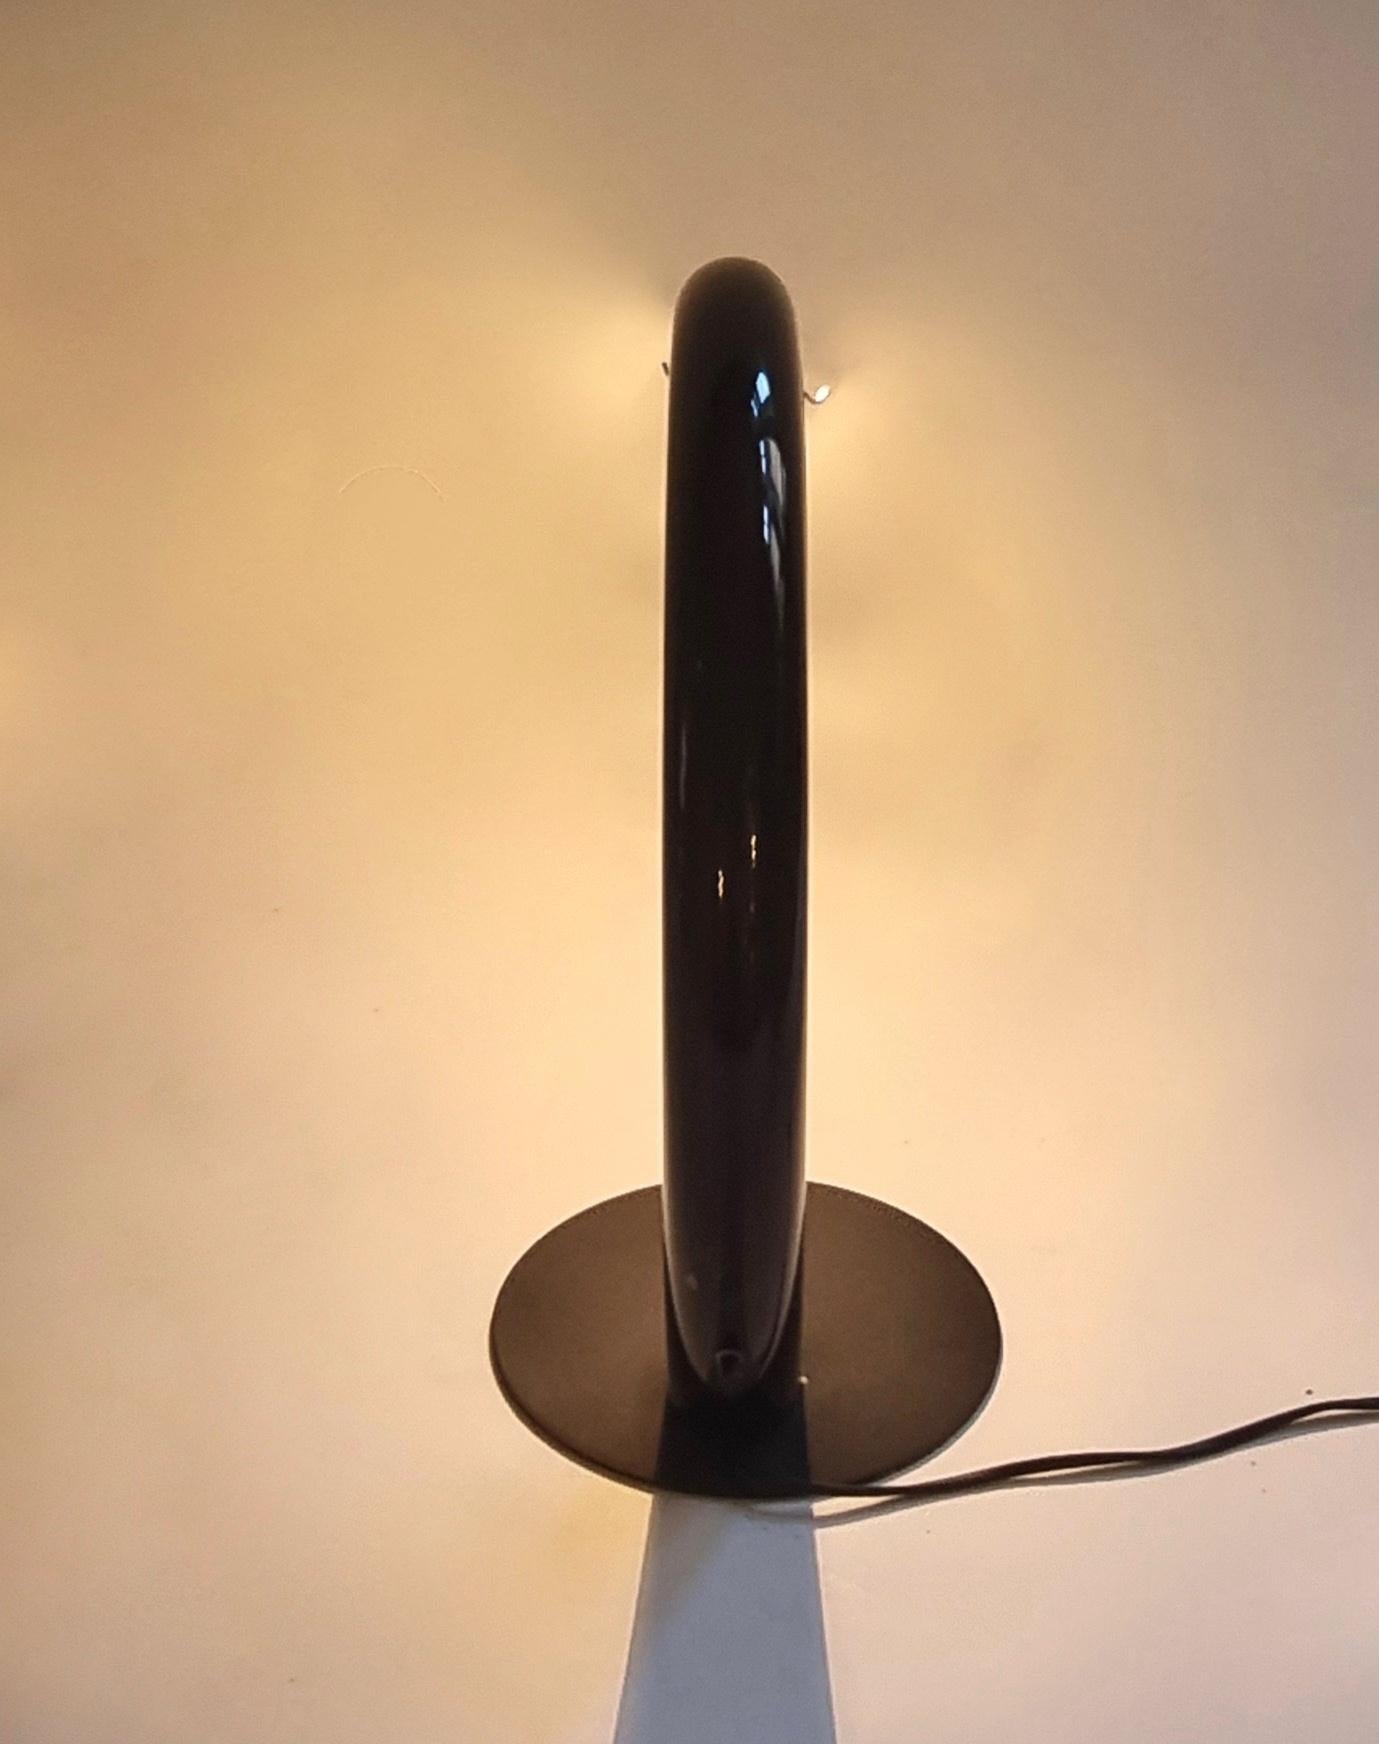 Dans cette annonce, vous trouverez une magnifique et extrêmement rare lampe de table moderne du milieu du siècle par AVMazzega. La lampe est dotée d'une base en métal et d'un abat-jour en arc de cercle en verre de Murano noir. Son design minimaliste